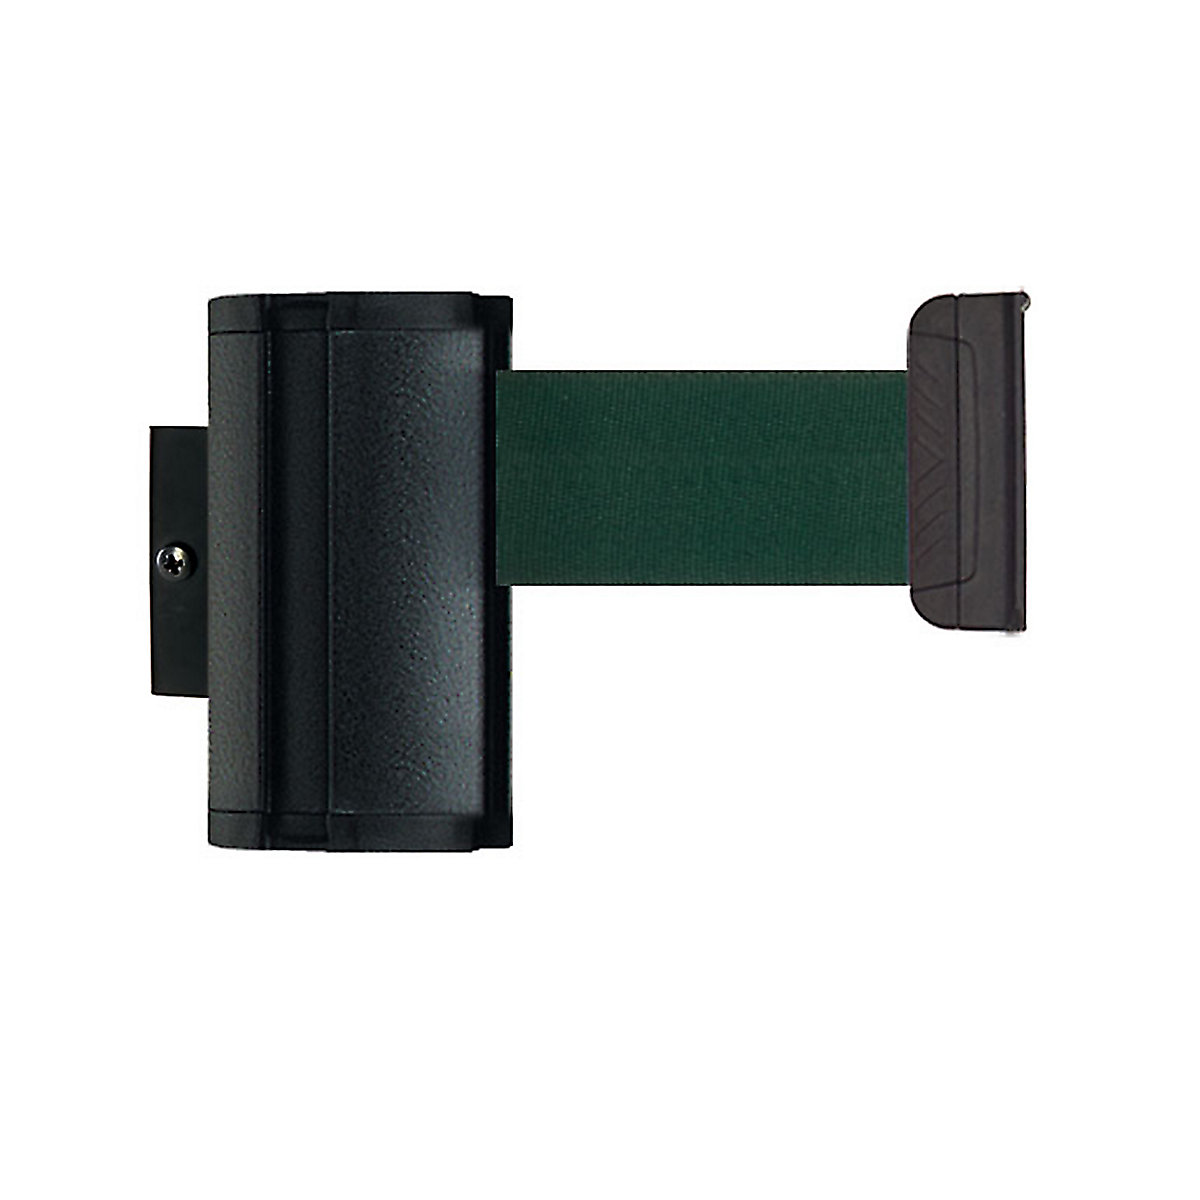 Cassetta per nastro Wall Mount, estrazione nastro max 2300 mm, nastro verde-8